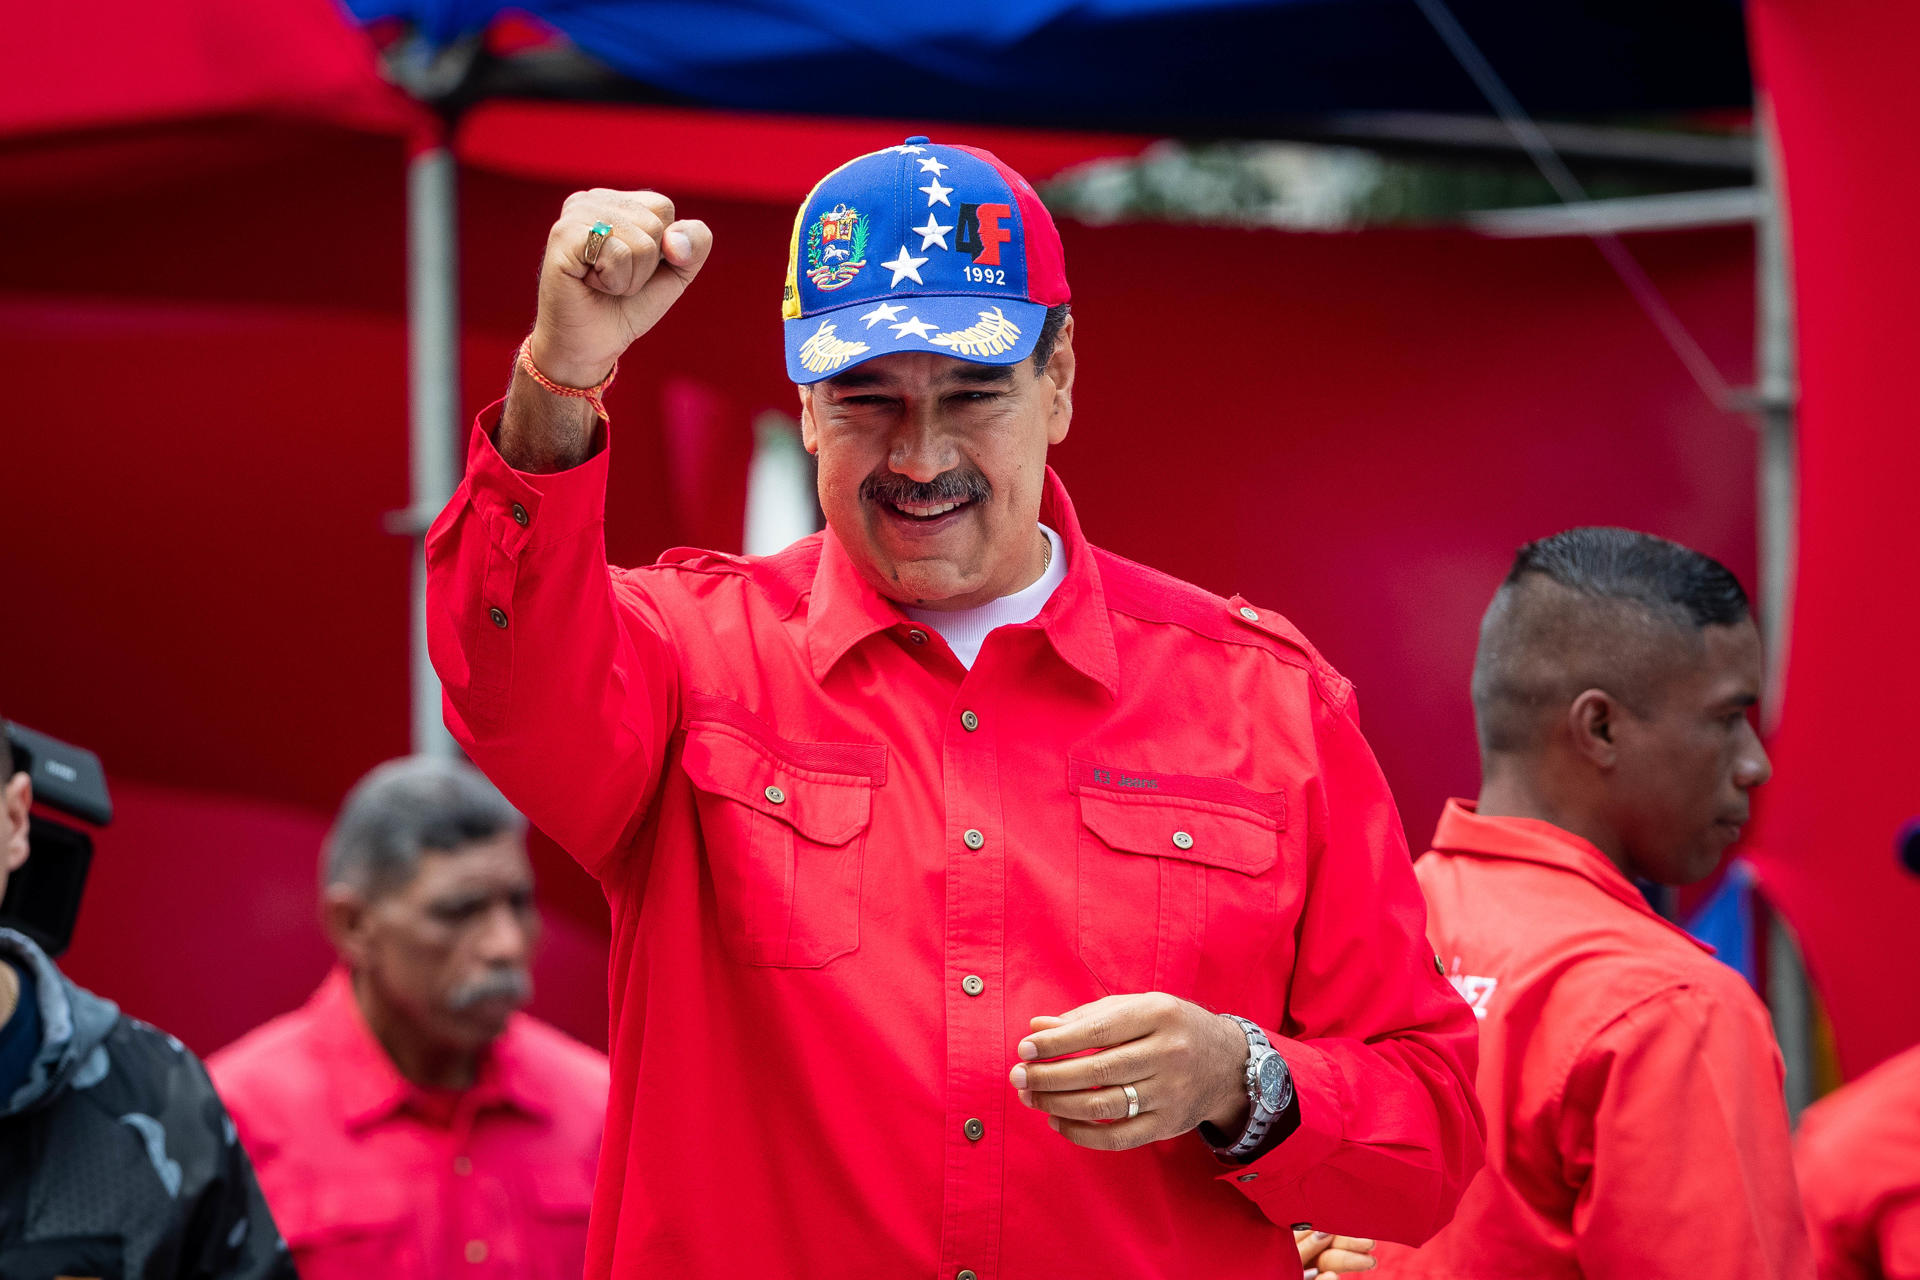 El presidente de Venezuela, Nicolás Maduro, en una fotografía de archivo. EFE/Rayner Peña R.